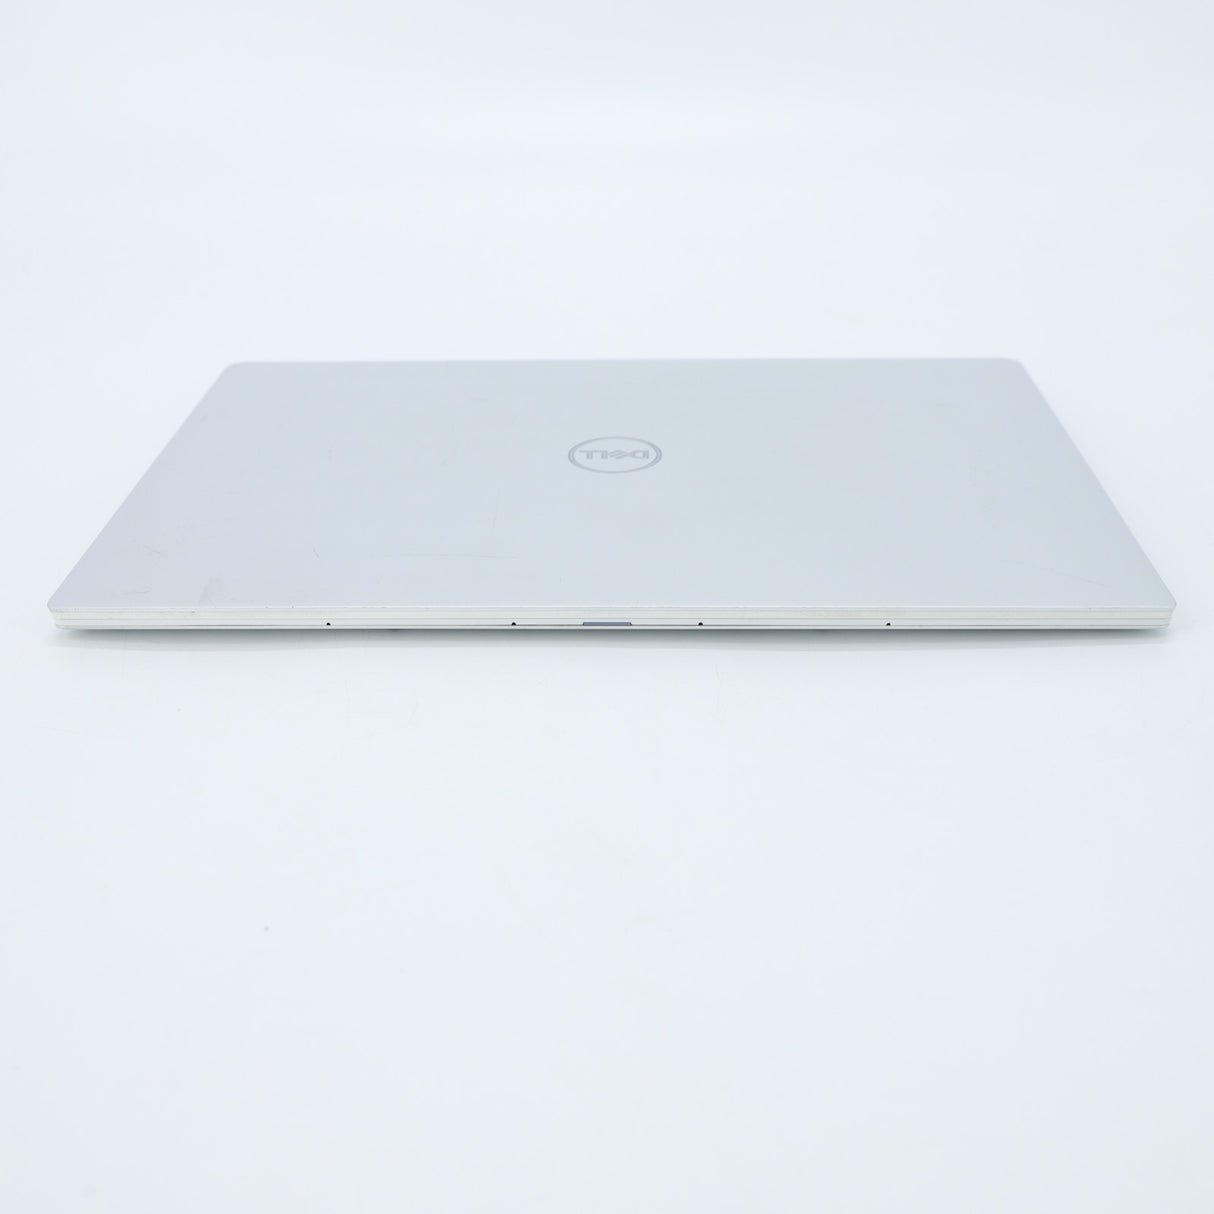 Dell XPS 13 7390 Laptop: Intel Core i7 10th Gen 16GB RAM 512GB SSD Warranty VAT - GreenGreen Store